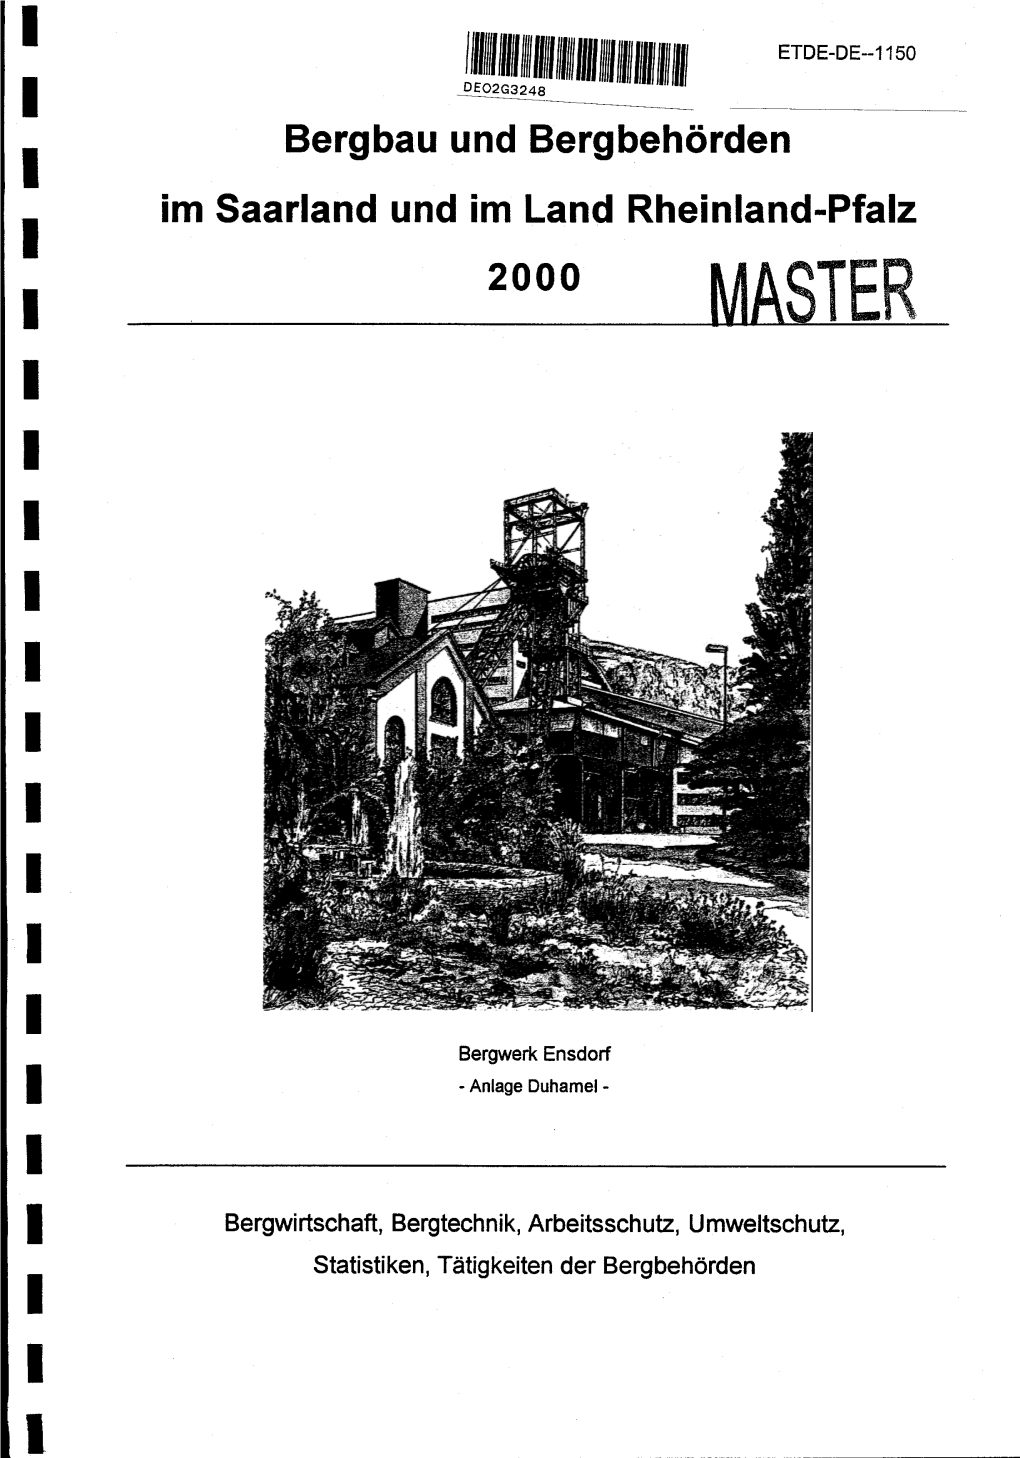 Bergbau Und Bergbehorden Im Saarland Und Im Land Rheinland-Pfalz 2000 MASTER